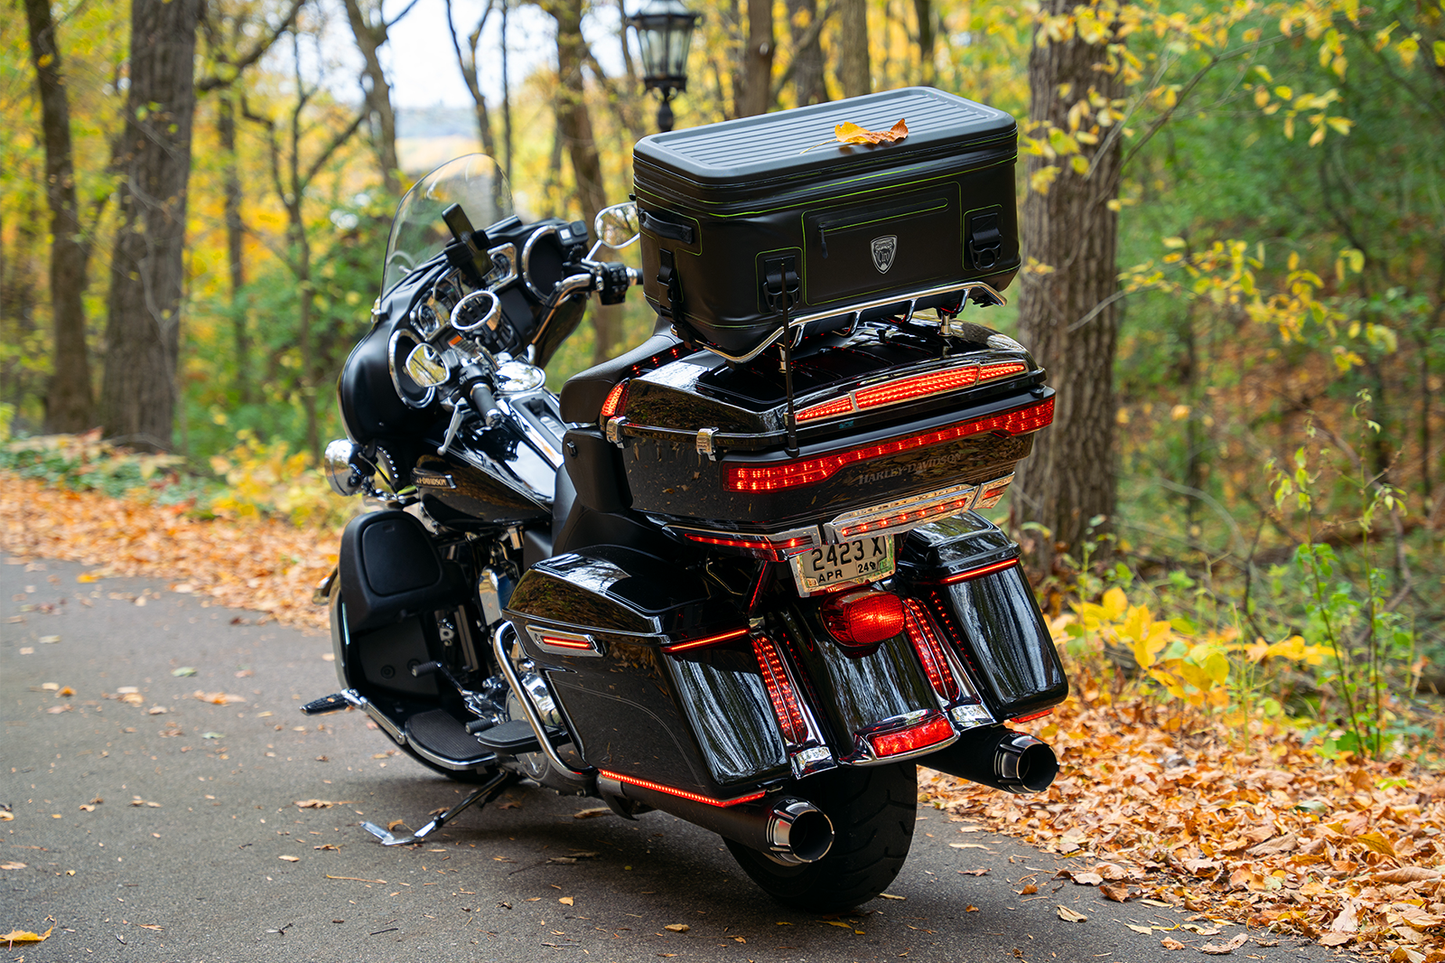 Dryforcetm snel loslaten waterdichte koeler voor Harley Davidson